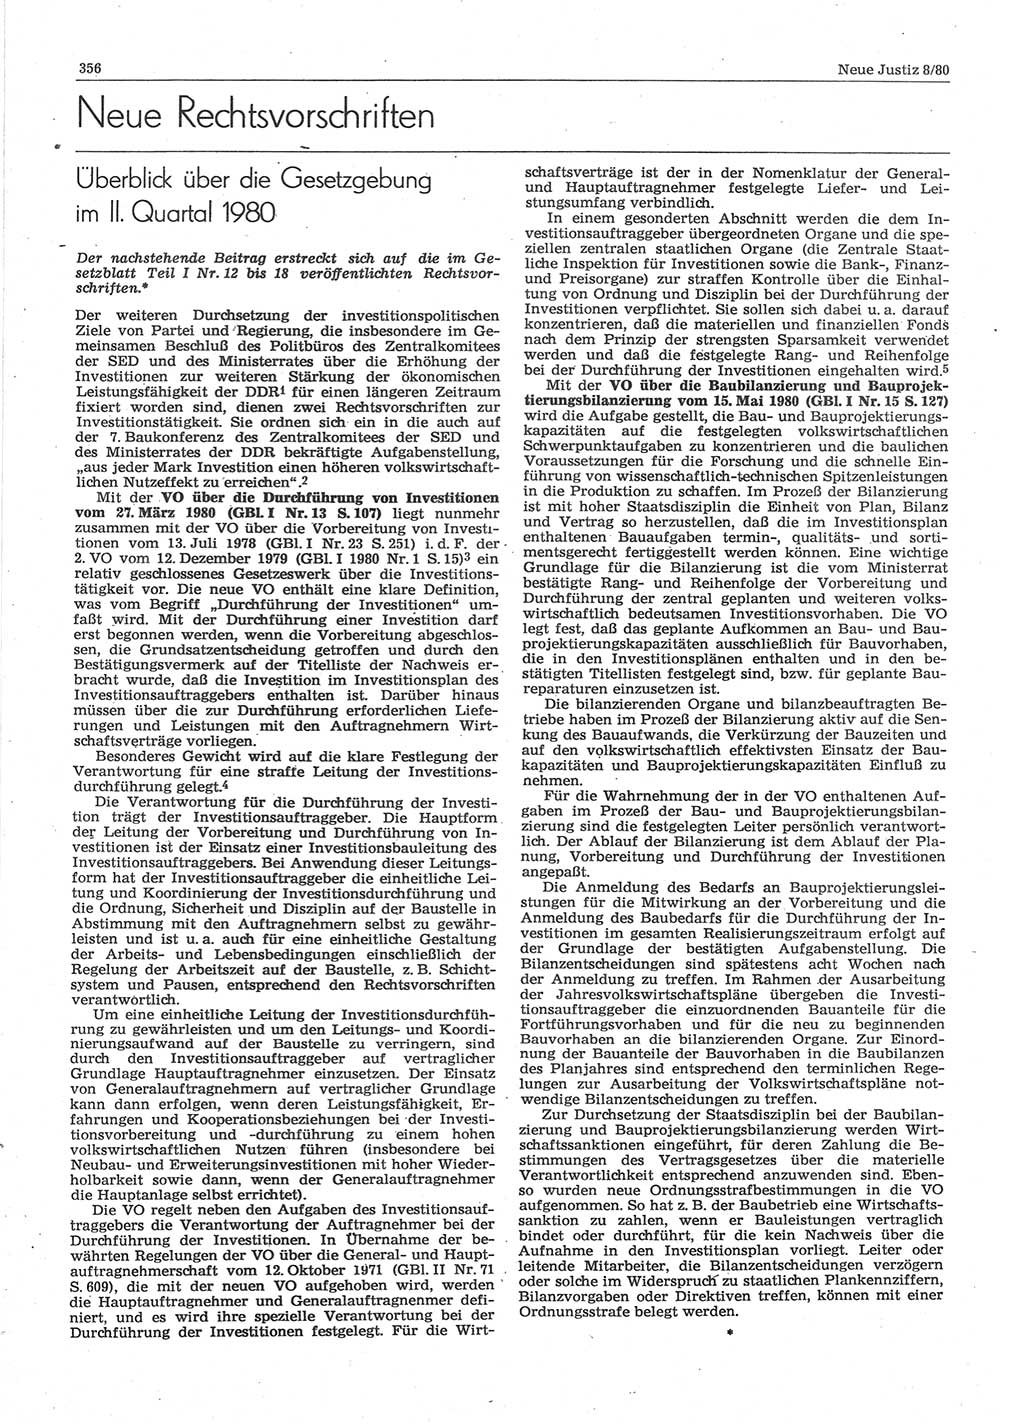 Neue Justiz (NJ), Zeitschrift für sozialistisches Recht und Gesetzlichkeit [Deutsche Demokratische Republik (DDR)], 34. Jahrgang 1980, Seite 356 (NJ DDR 1980, S. 356)